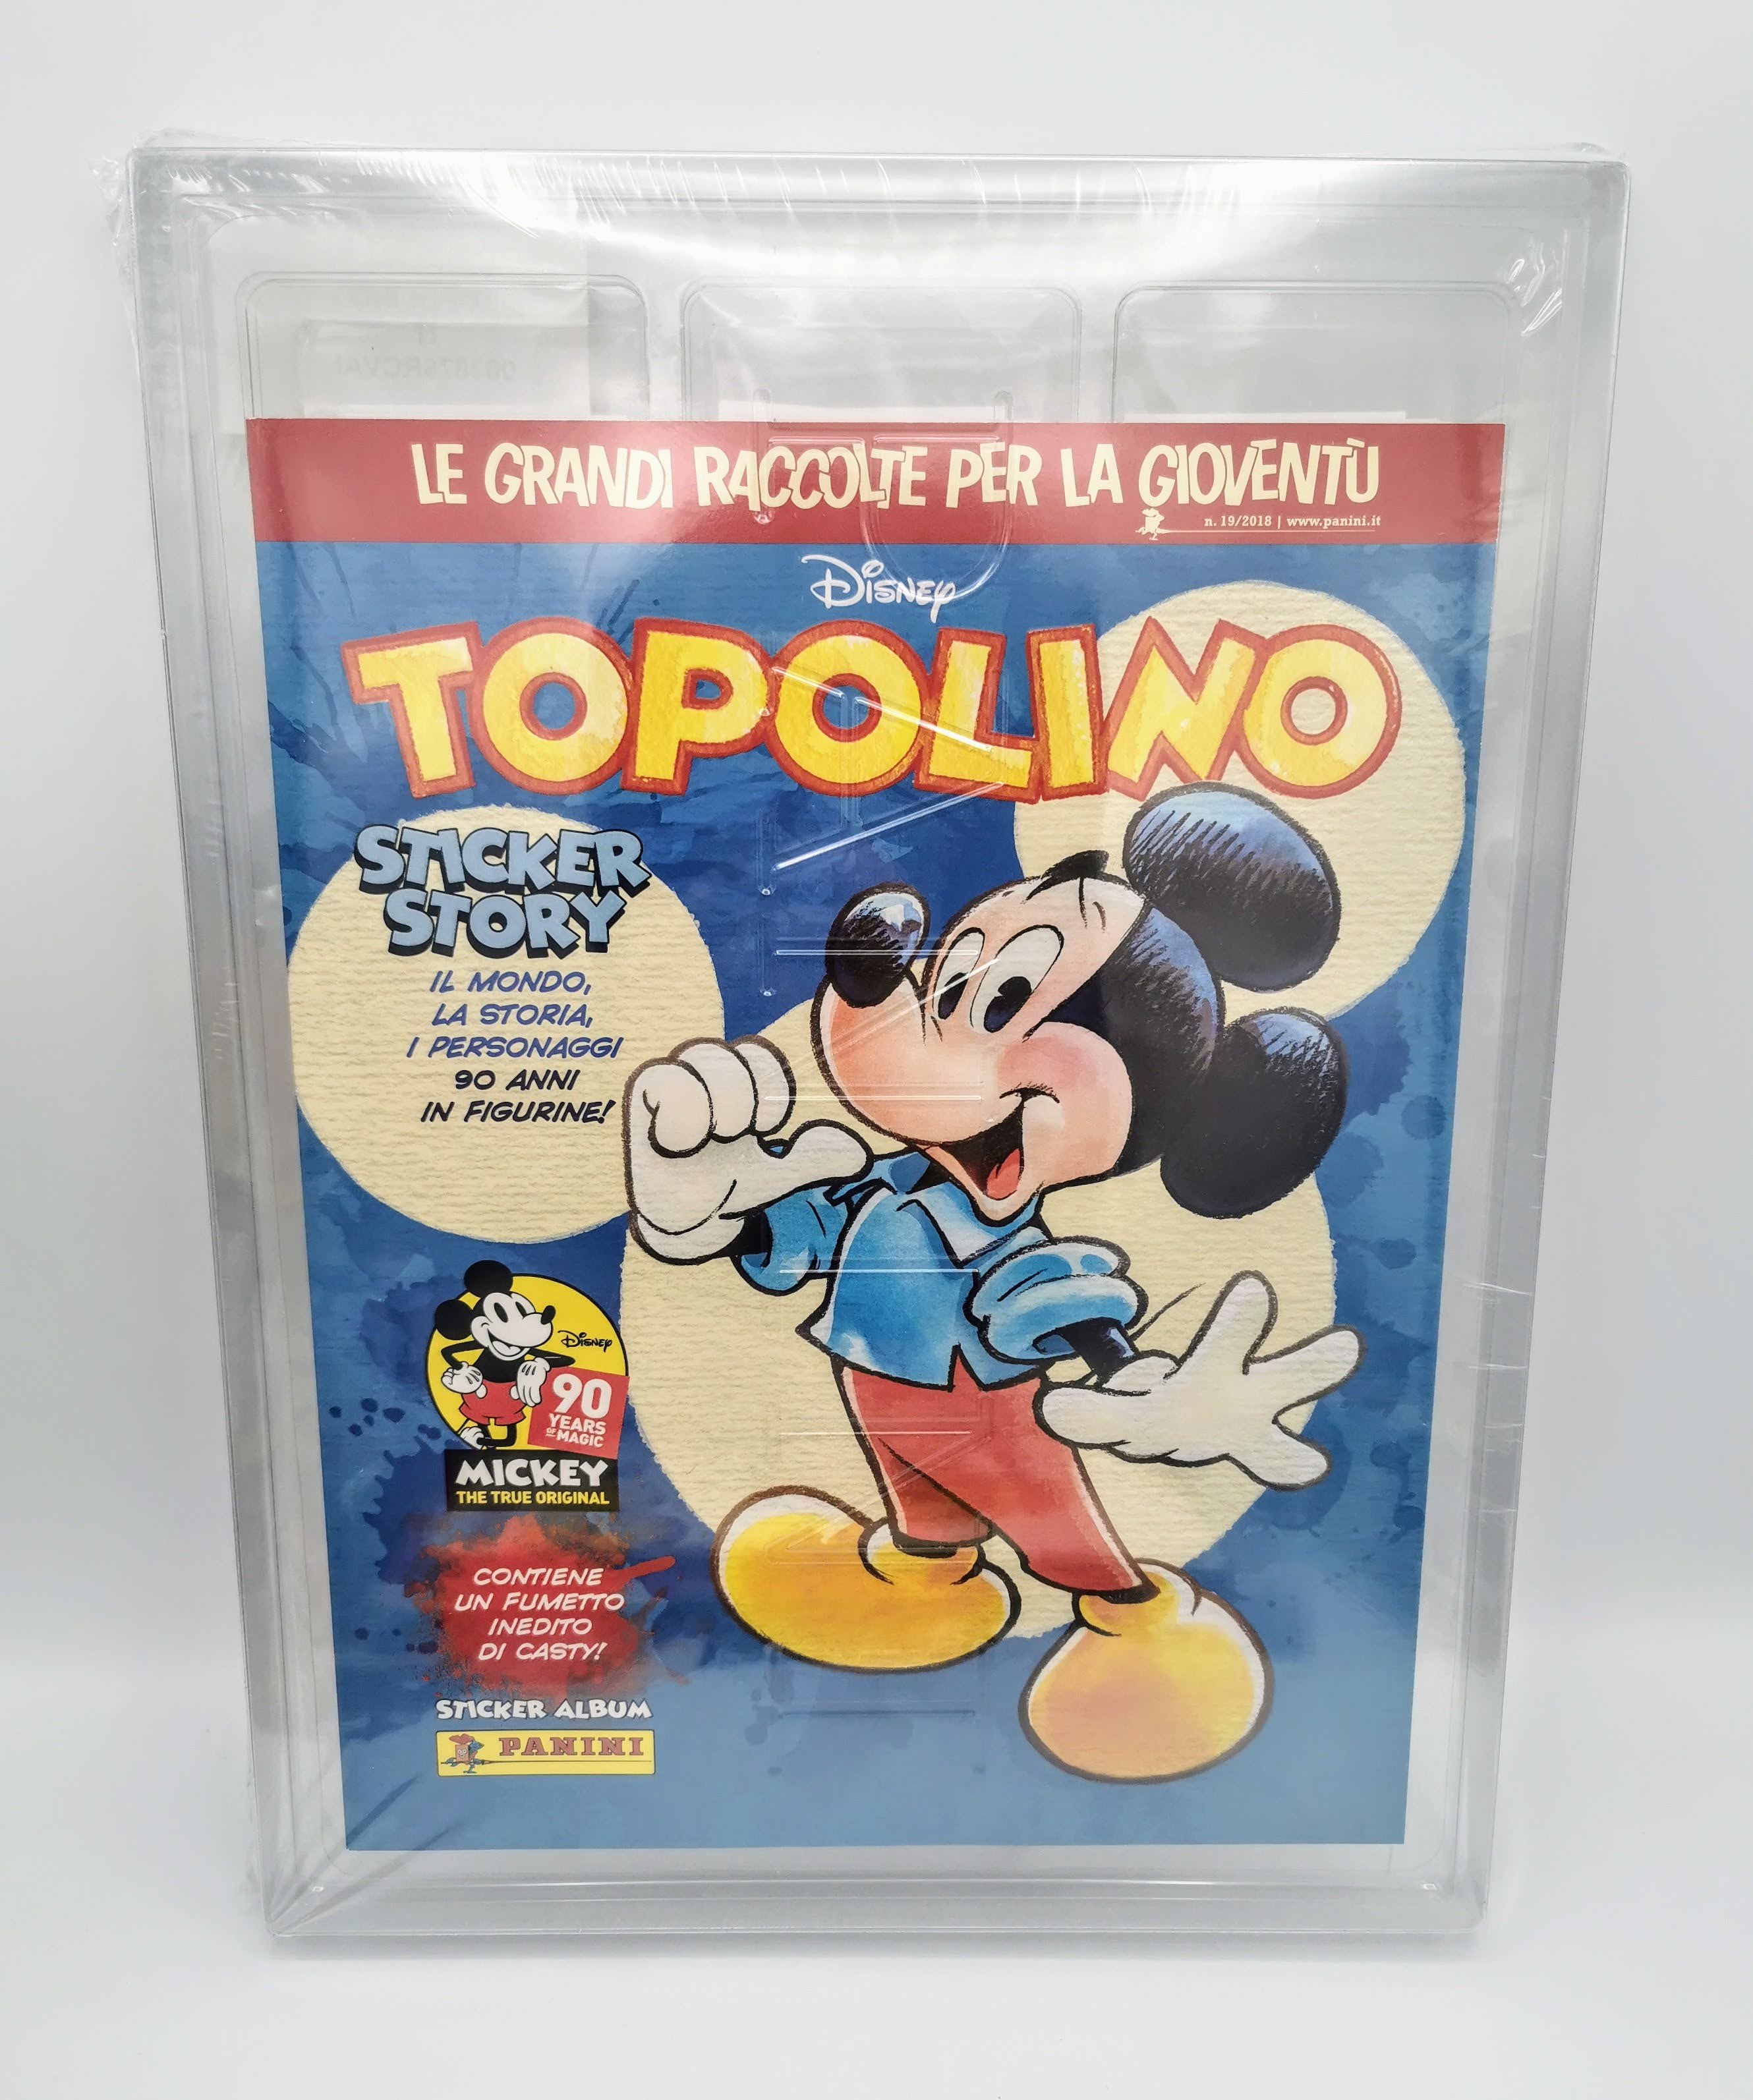 Topolino Disney Sticker Story 90 album + set completo sigillato figurine Panini